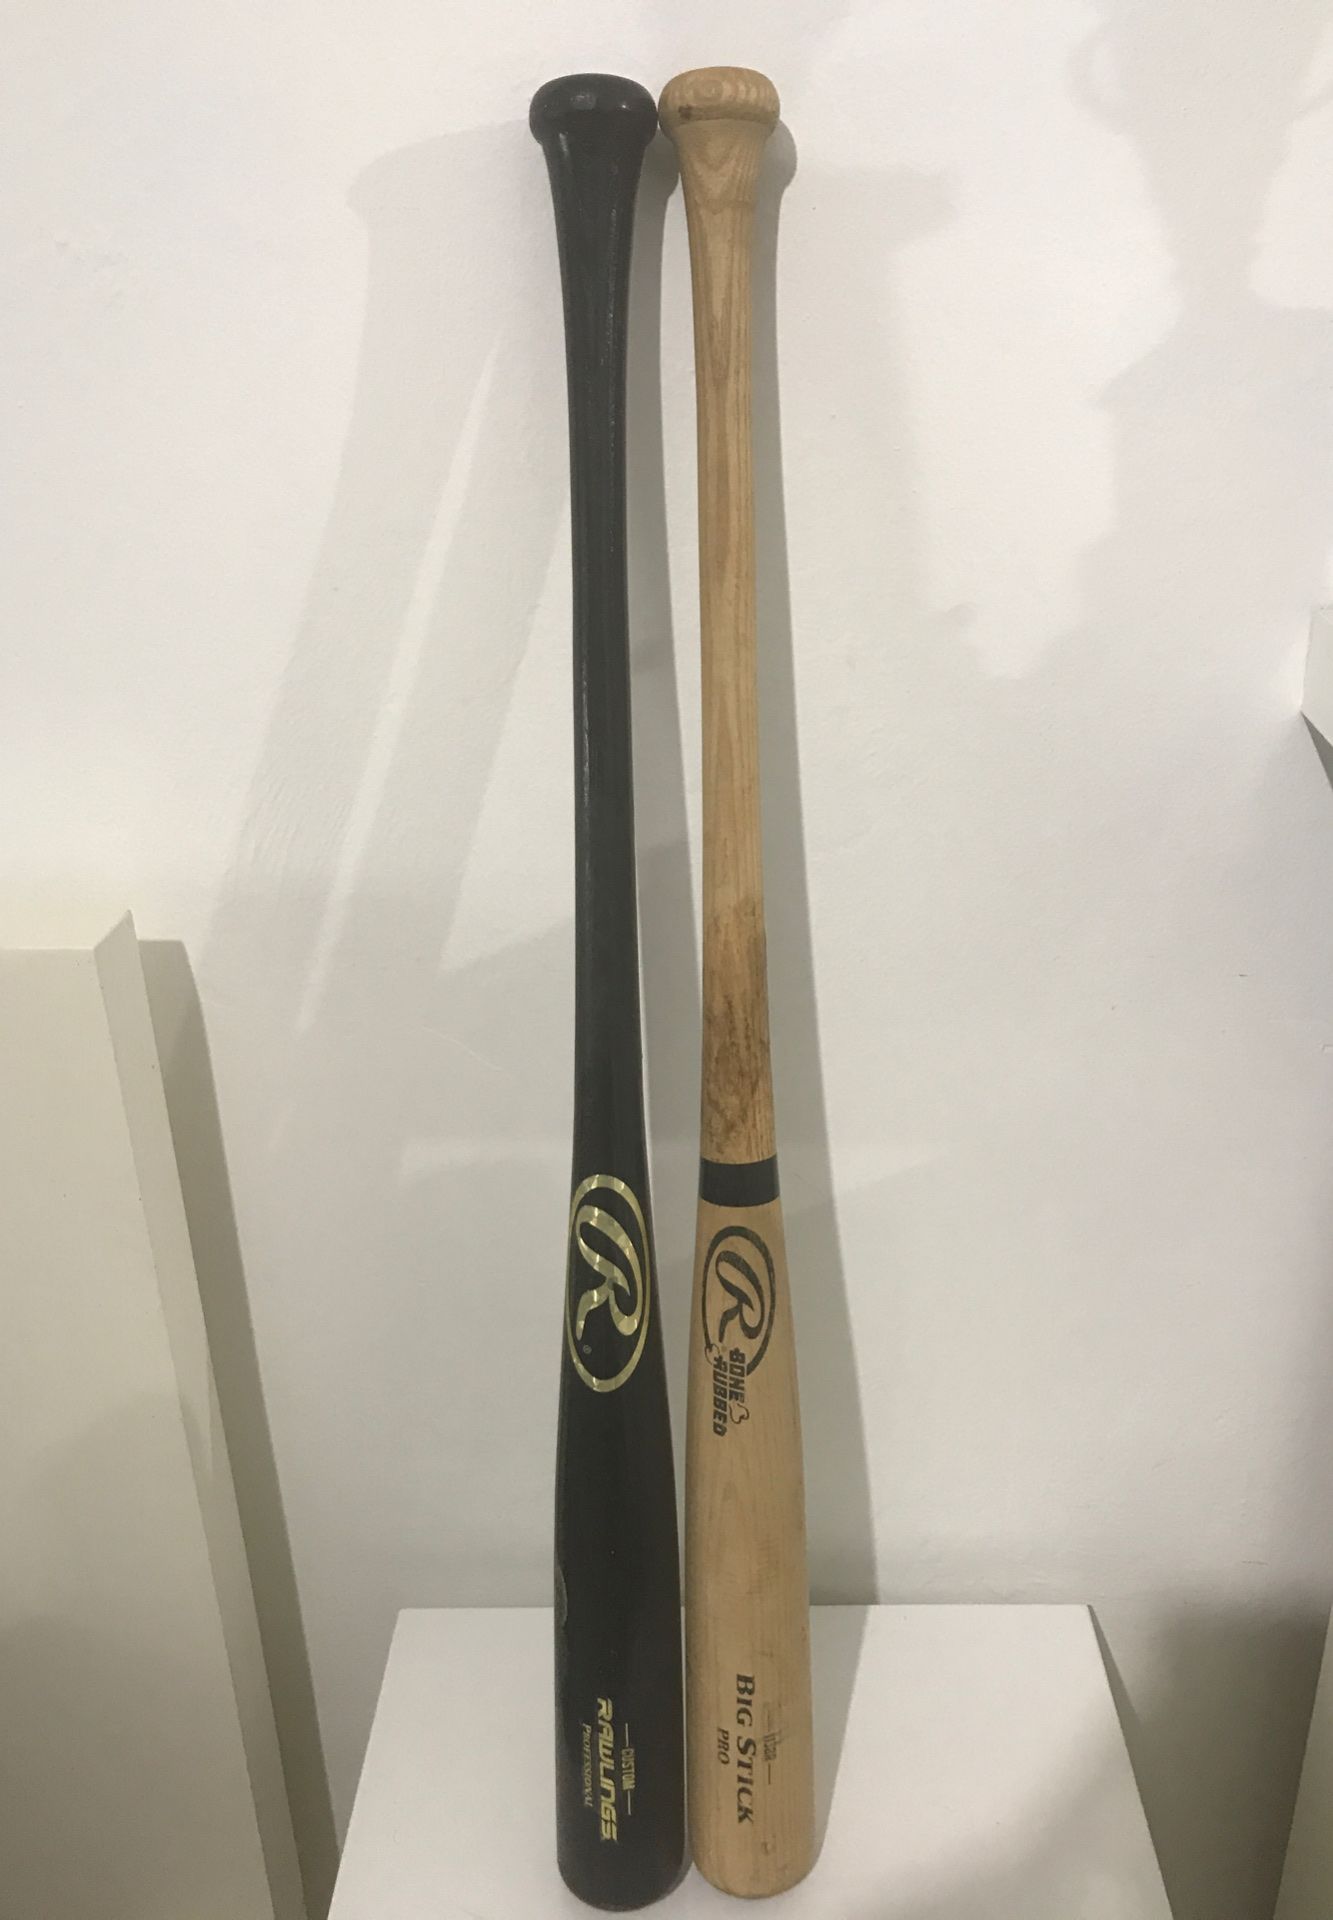 Rawlings baseball bats